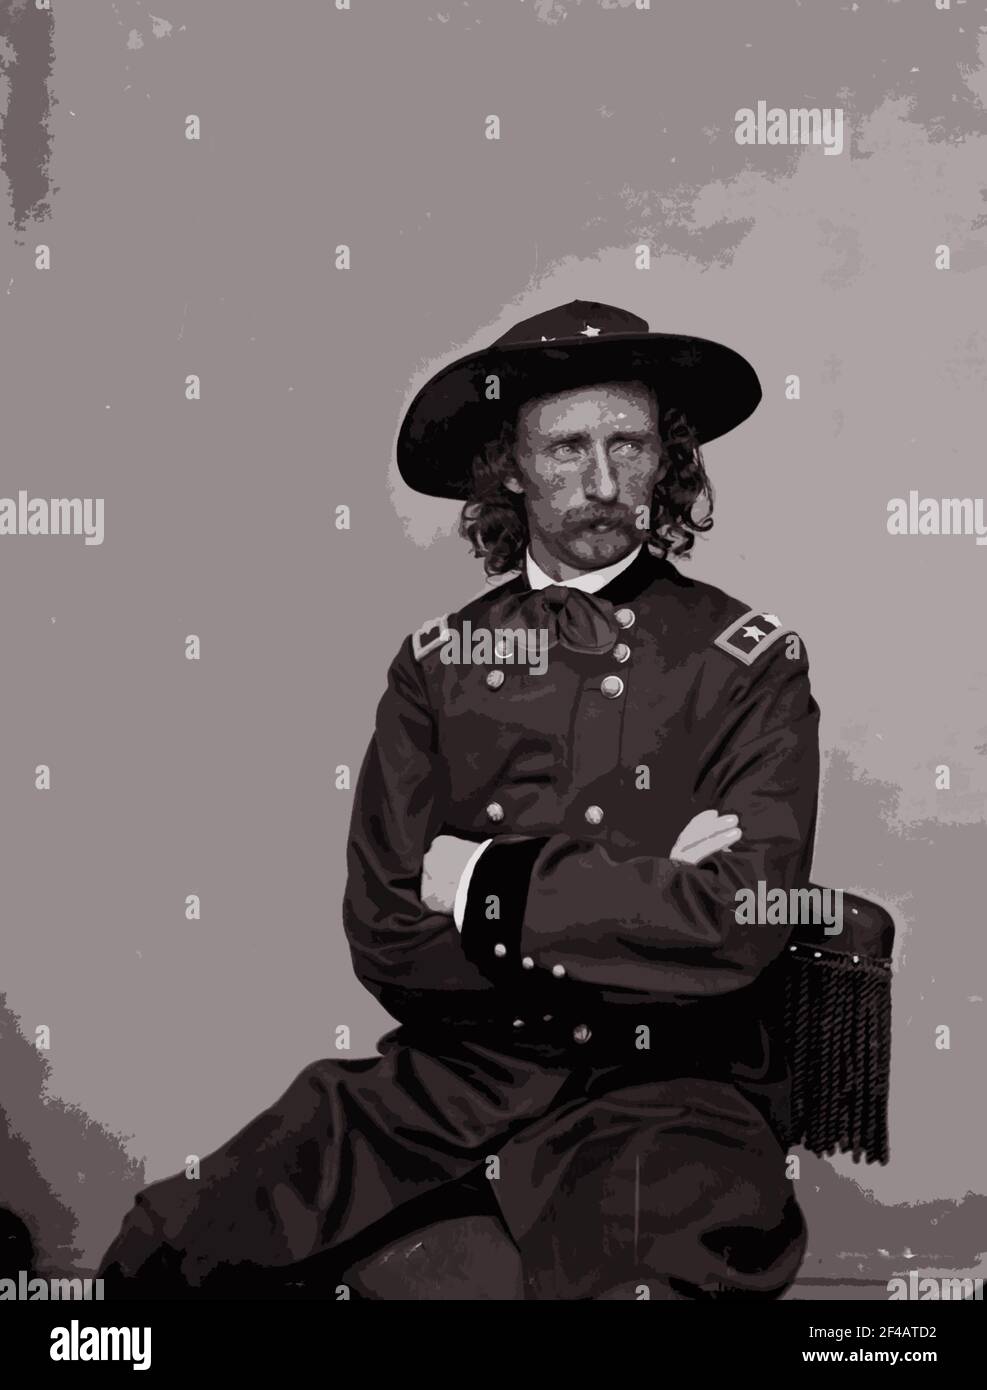 Una fotografía de estudio de 1885 del mayor General George Armstrong Custer alterado con un filtro de efectos especiales de Photoshop. Foto de stock